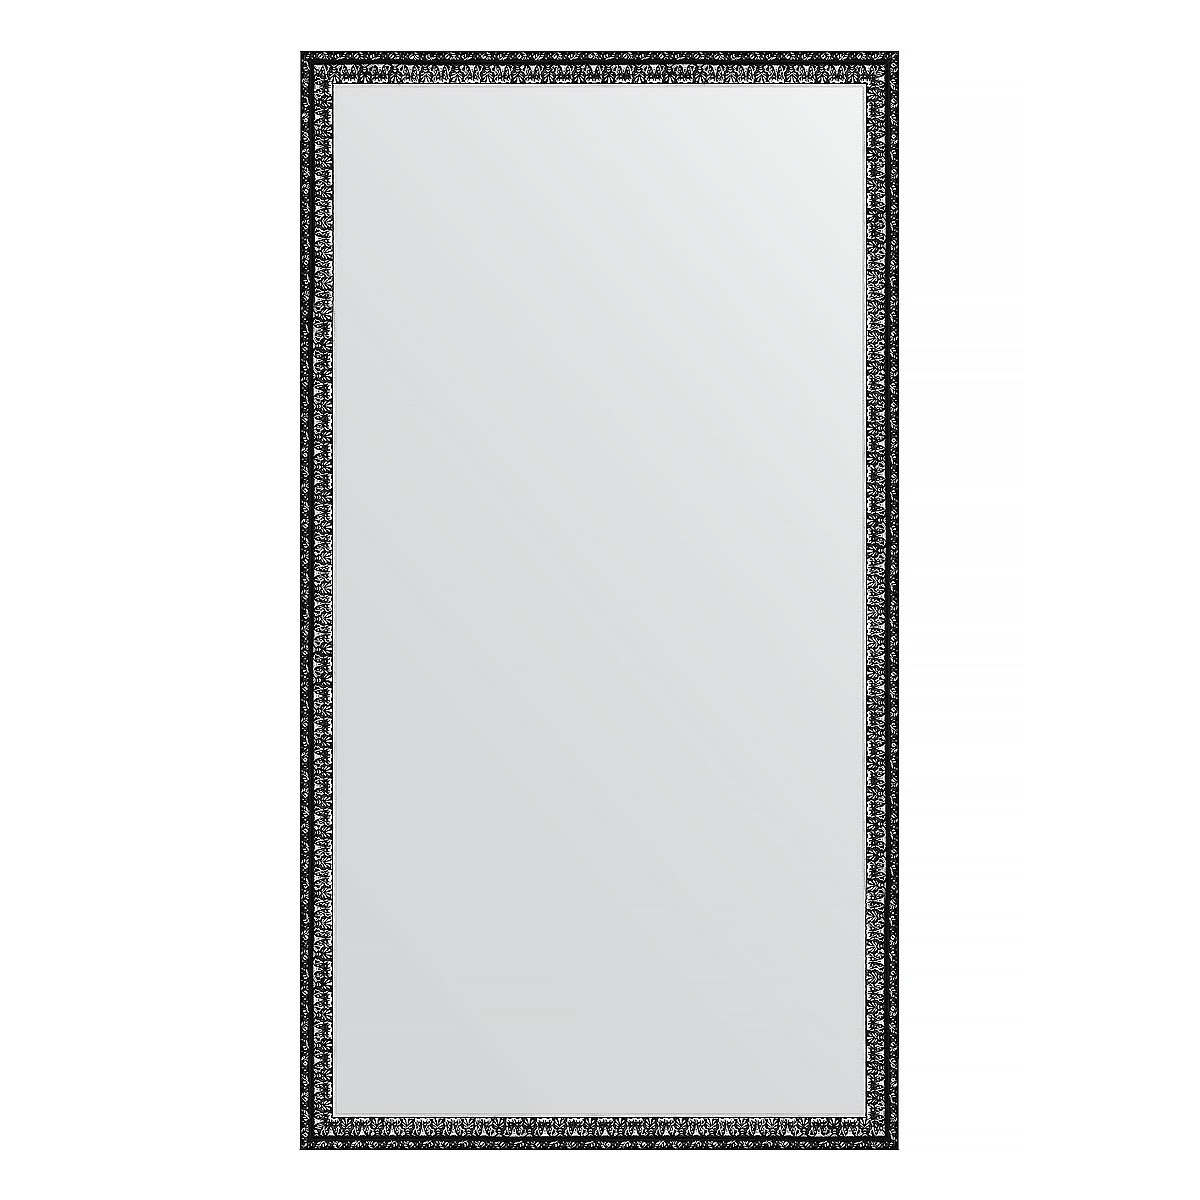 Зеркало в багетной раме Evoform черненое серебро 38 мм 60х110 см зеркало в багетной раме evoform травленое серебро 59 мм 54х104 см